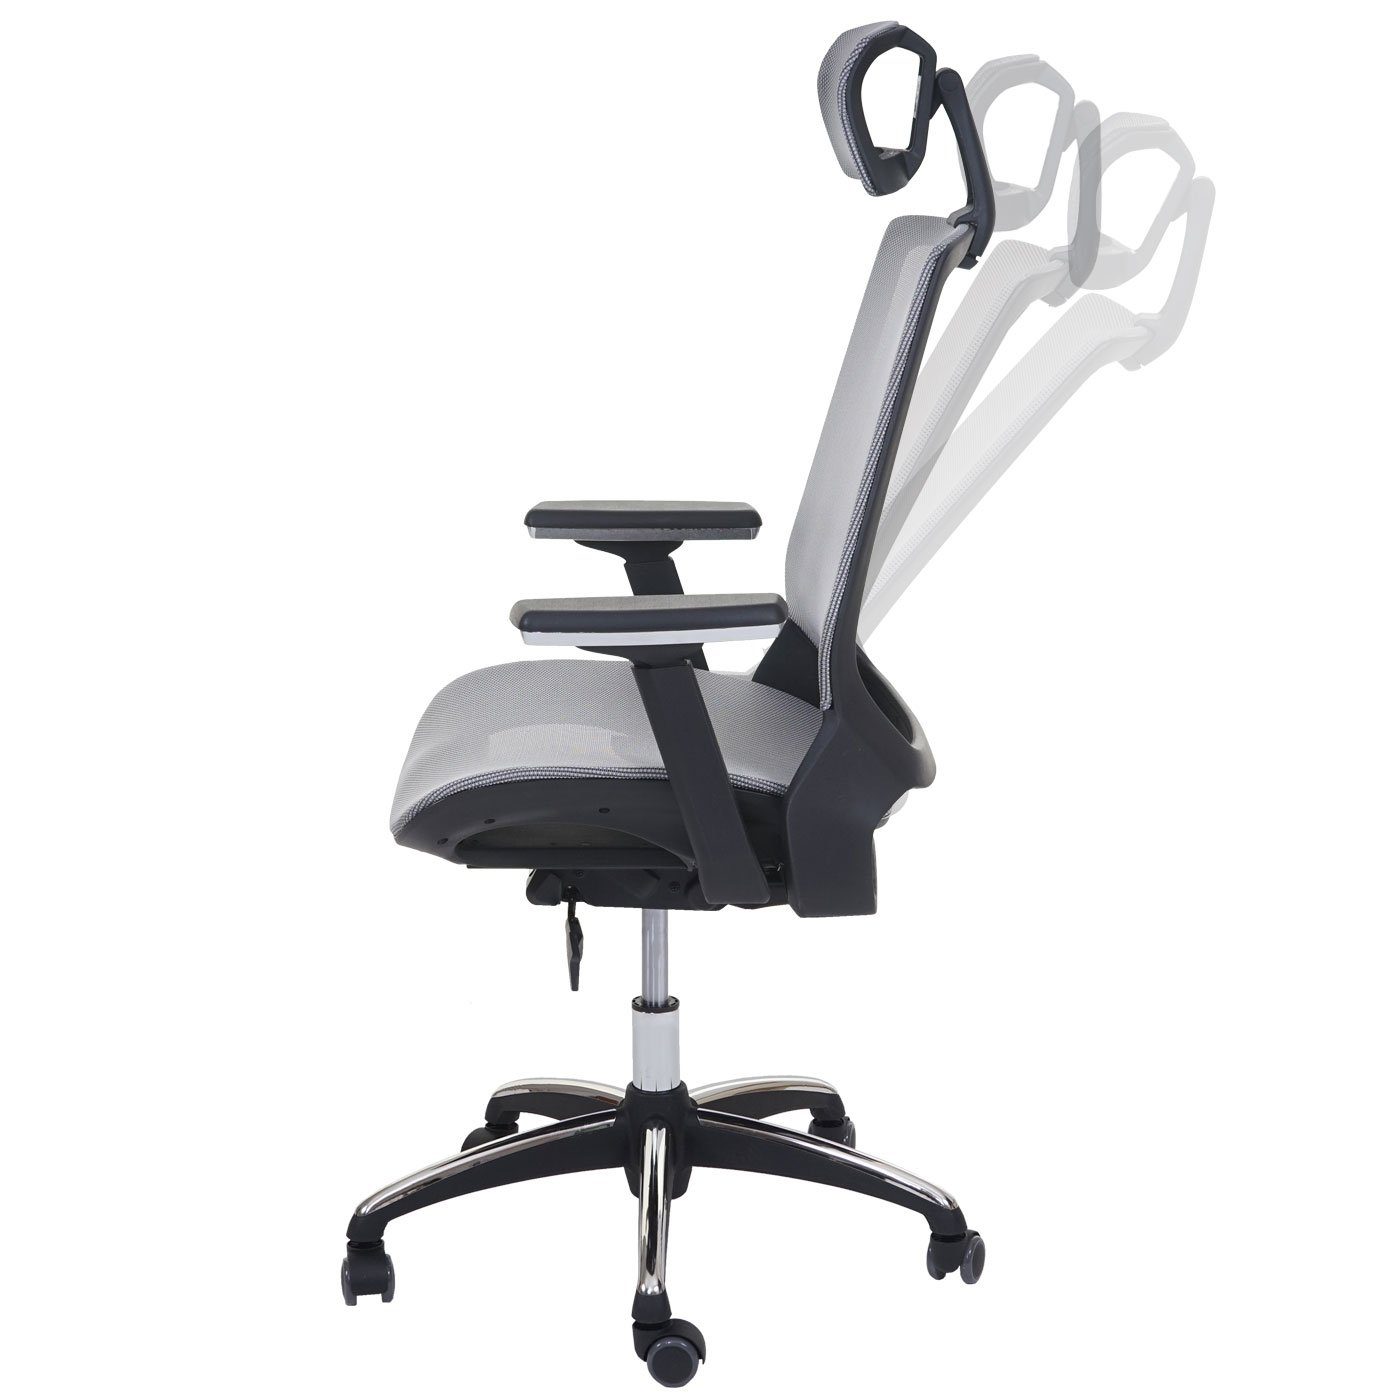 MCW-A59, Kopfstütze, MCW Höhenverstellbare tiefenverstellbare Sitzfläche Schreibtischstuhl grau